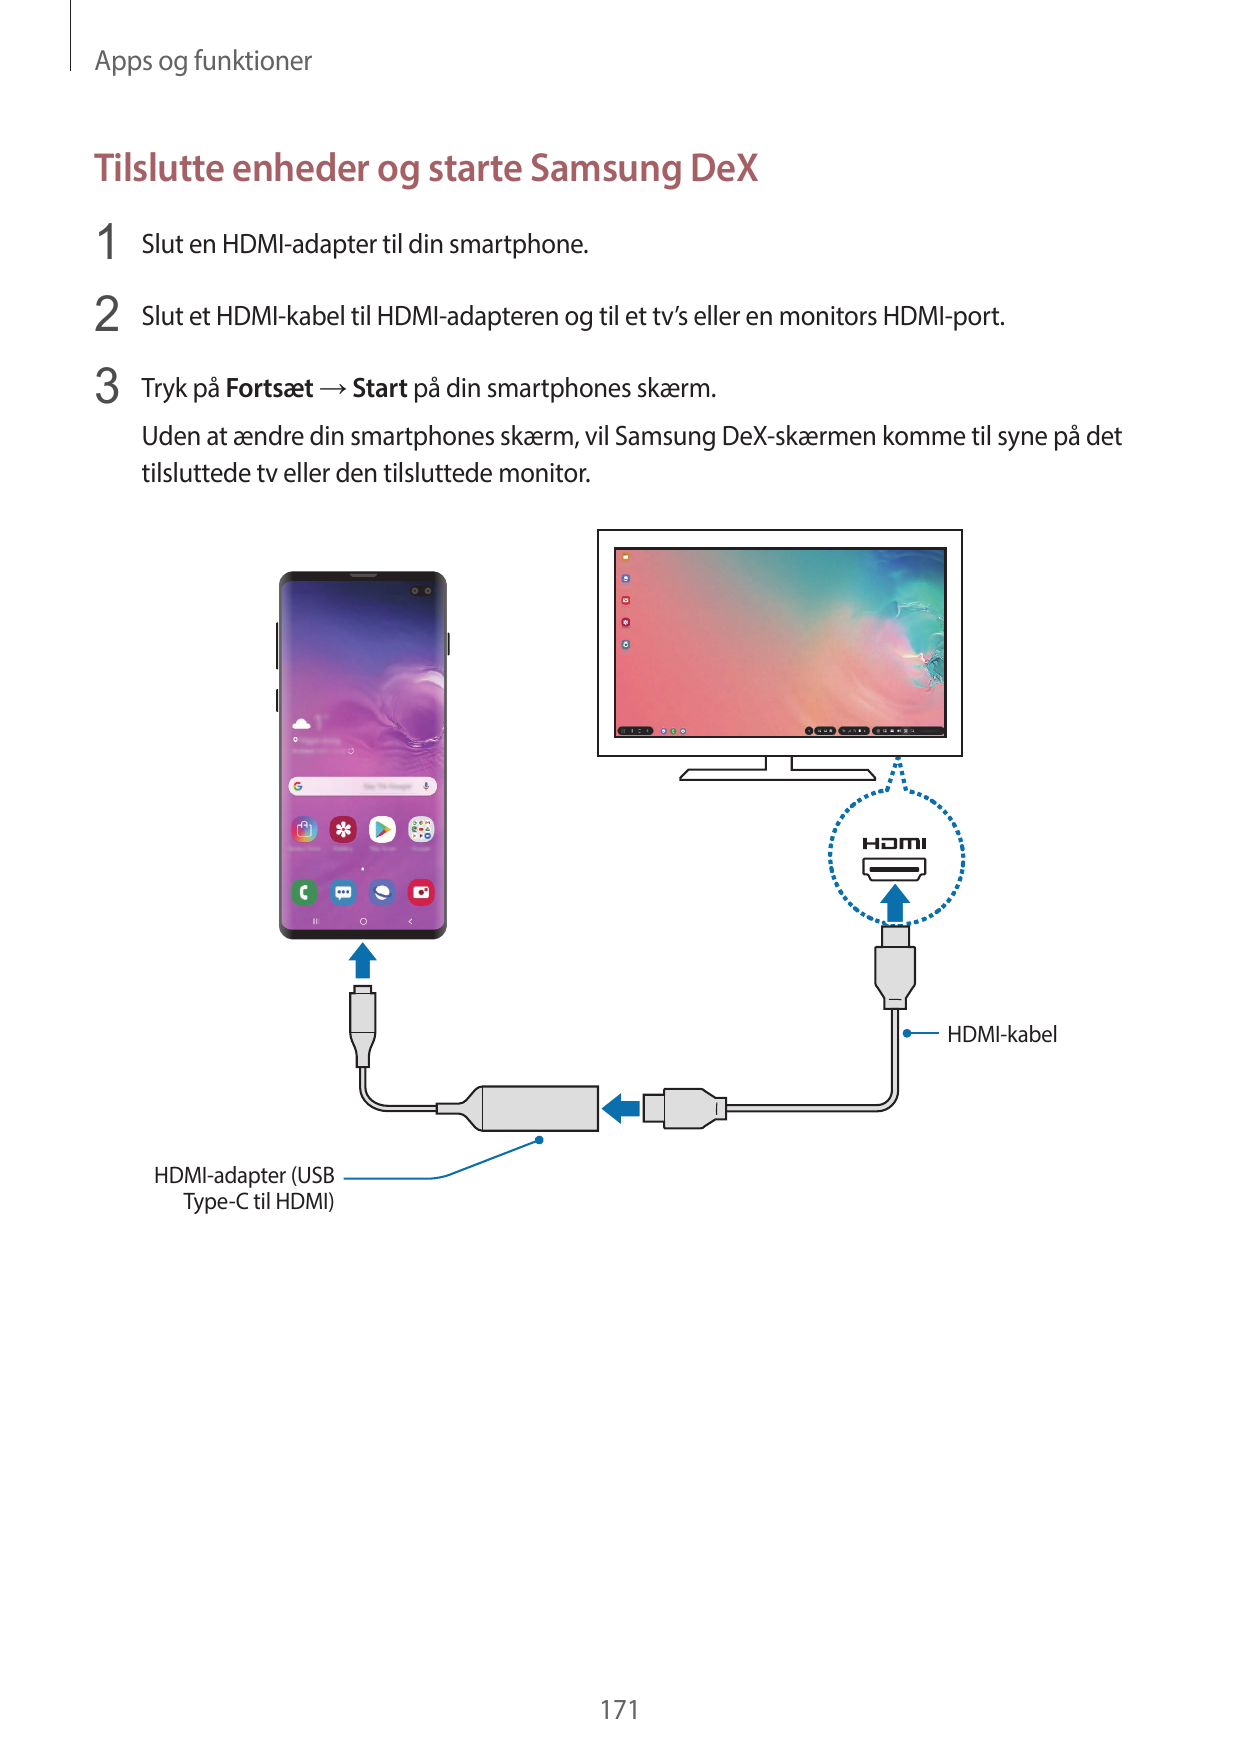 Apps og funktionerTilslutte enheder og starte Samsung DeX1 Slut en HDMI-adapter til din smartphone.2 Slut et HDMI-kabel til HDMI